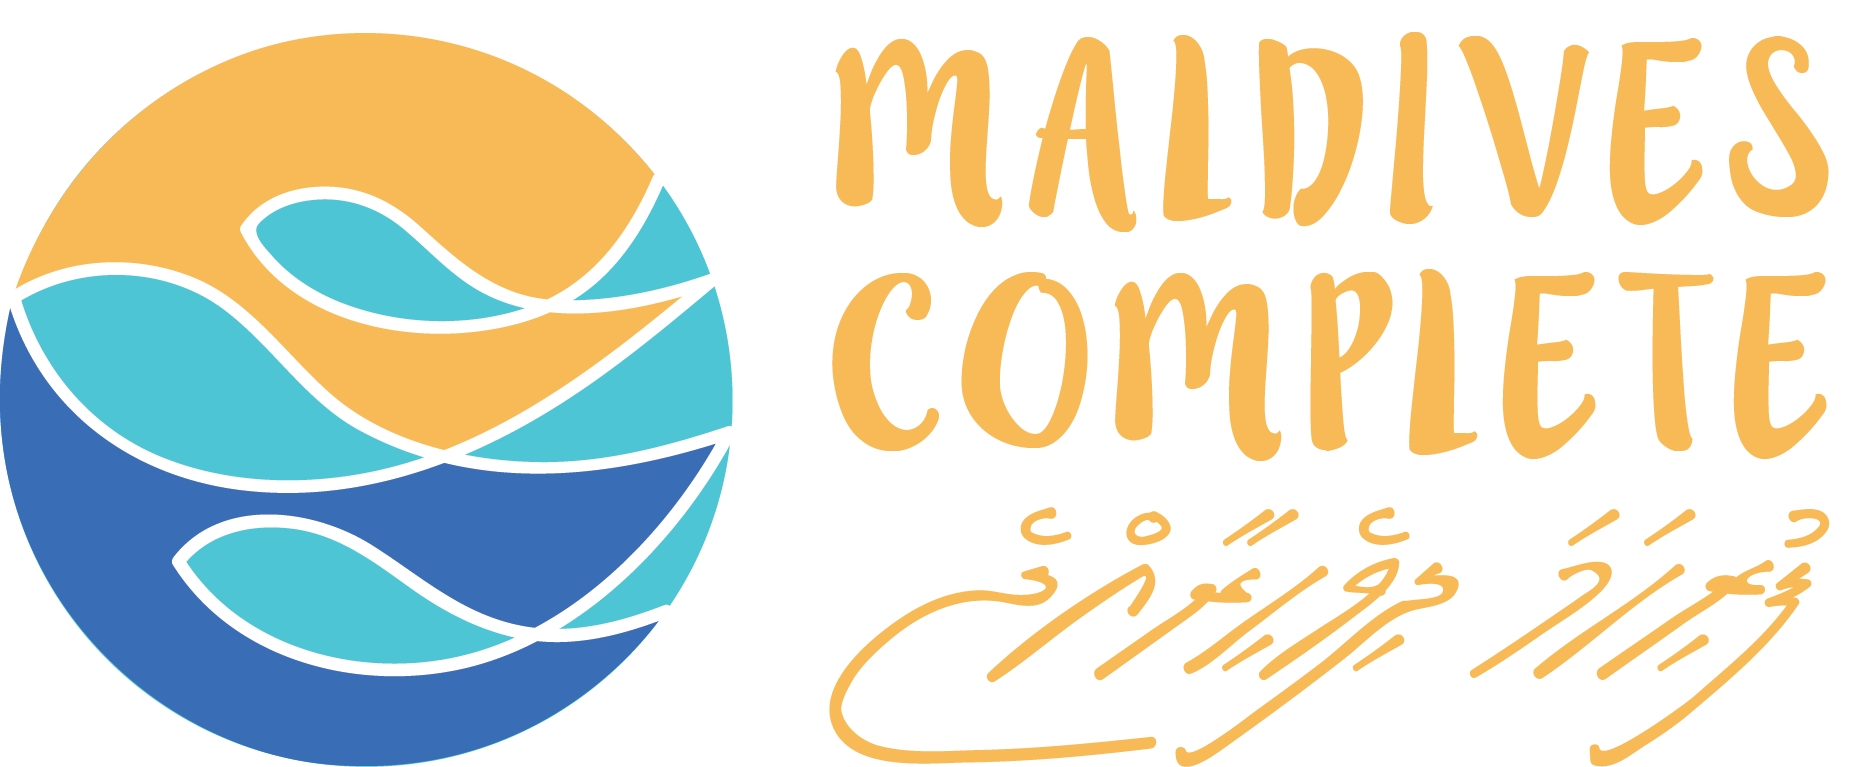 Maldives Complete